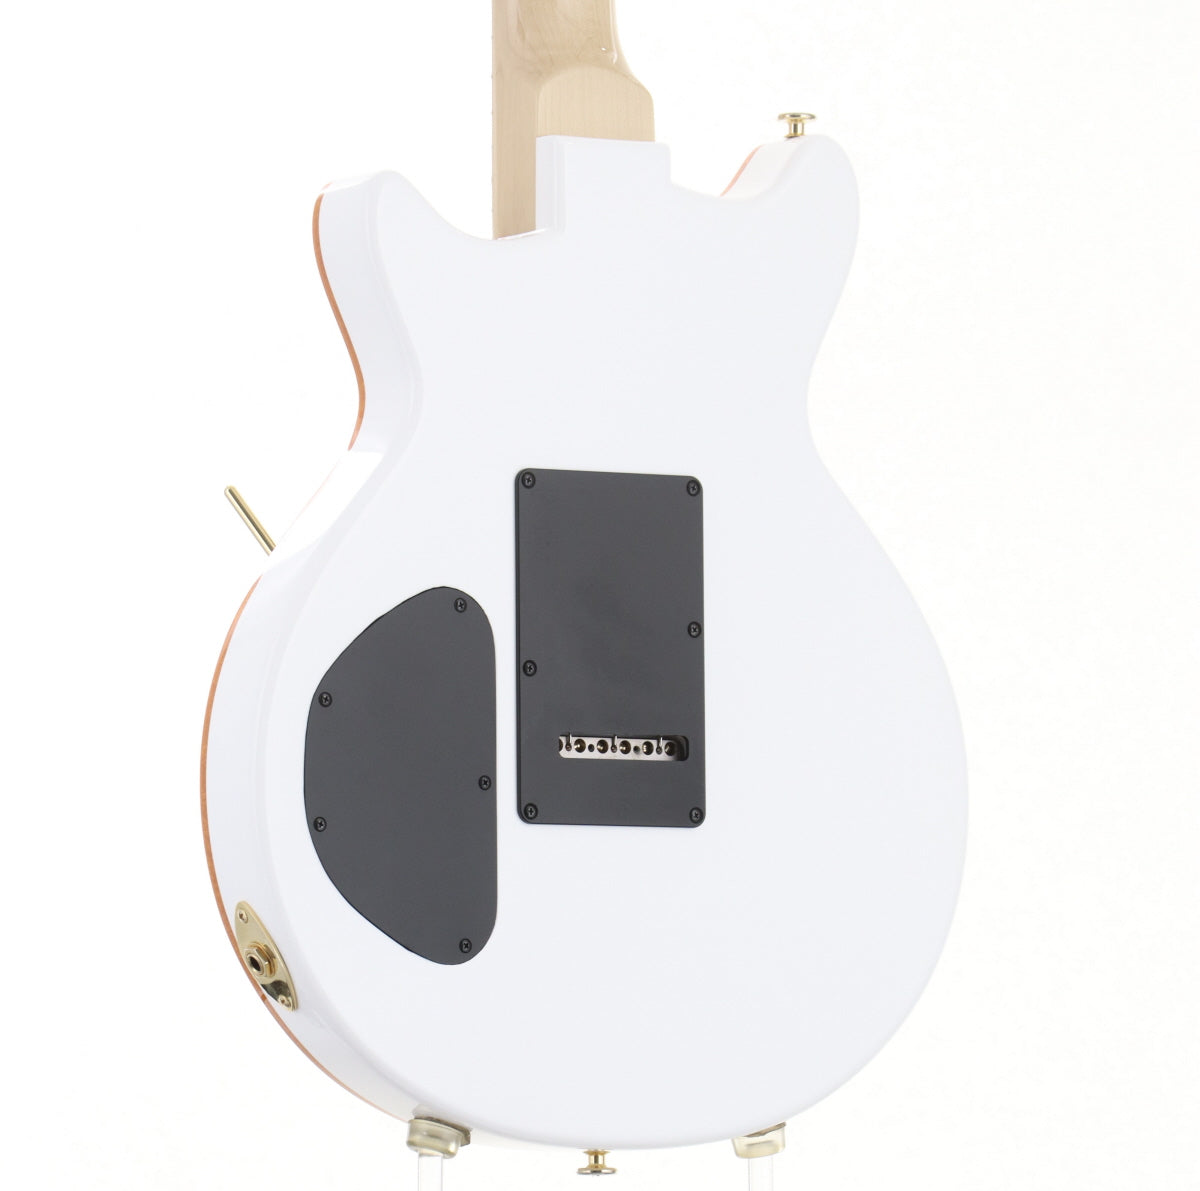 [SN 20180083] USED Kz Guitar Works / Kz One Solid 3S11 Synchro Jet White [03]